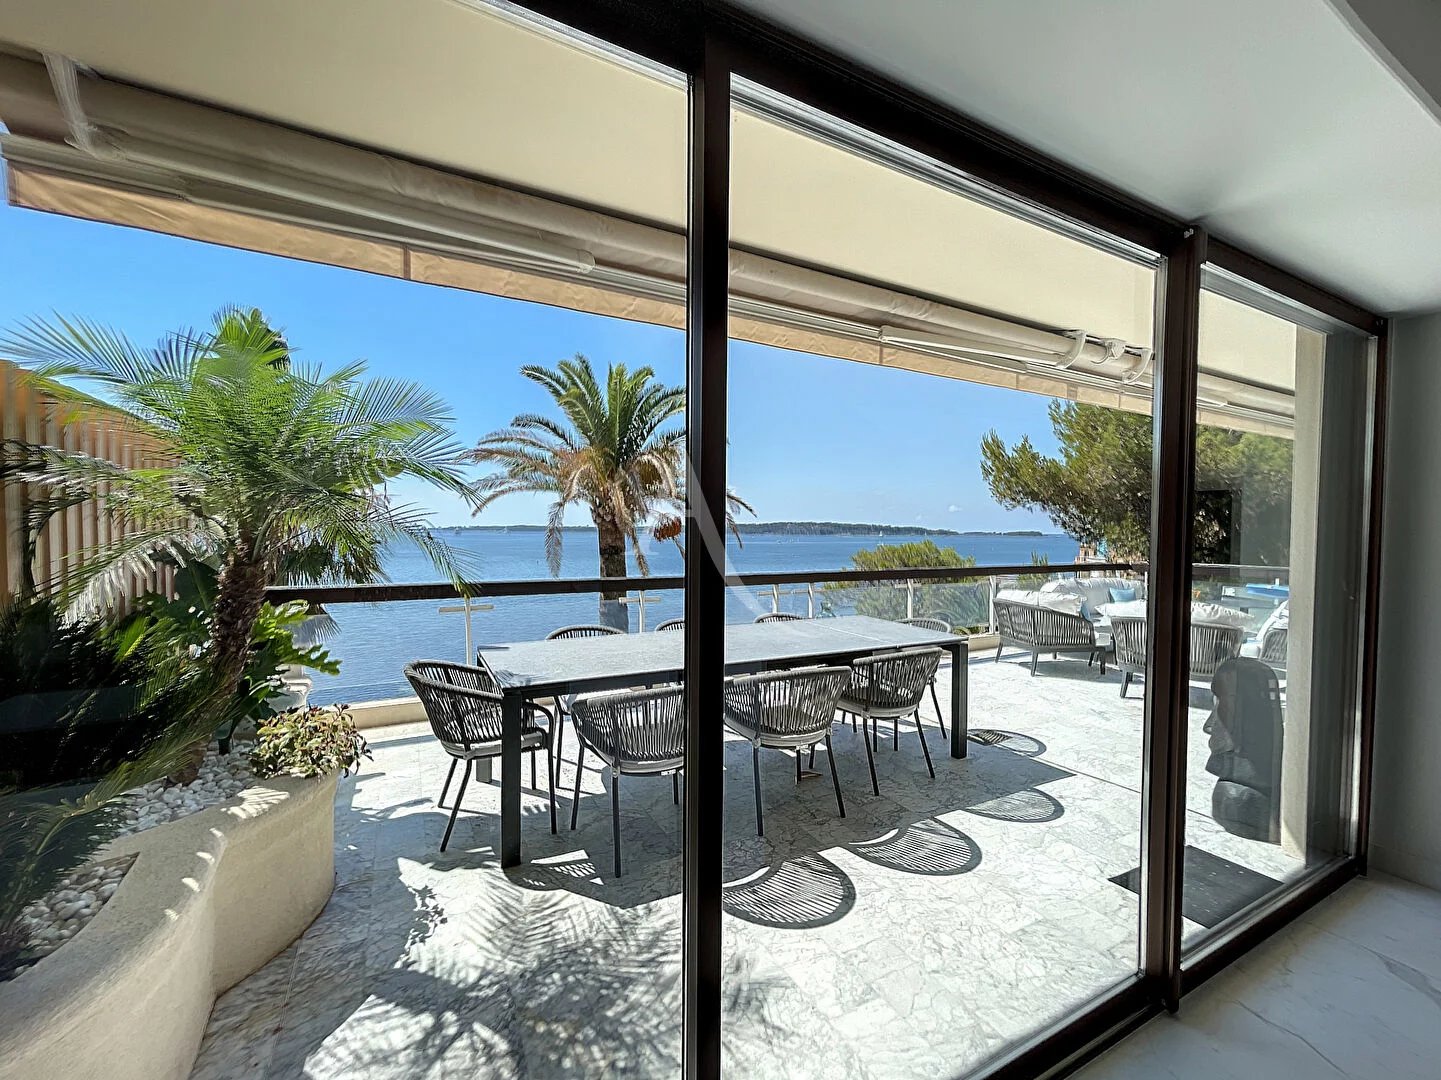 7270253-Cannes - Pointe Palm Beach - appartement 4 pièces - vue mer - Dernier étage